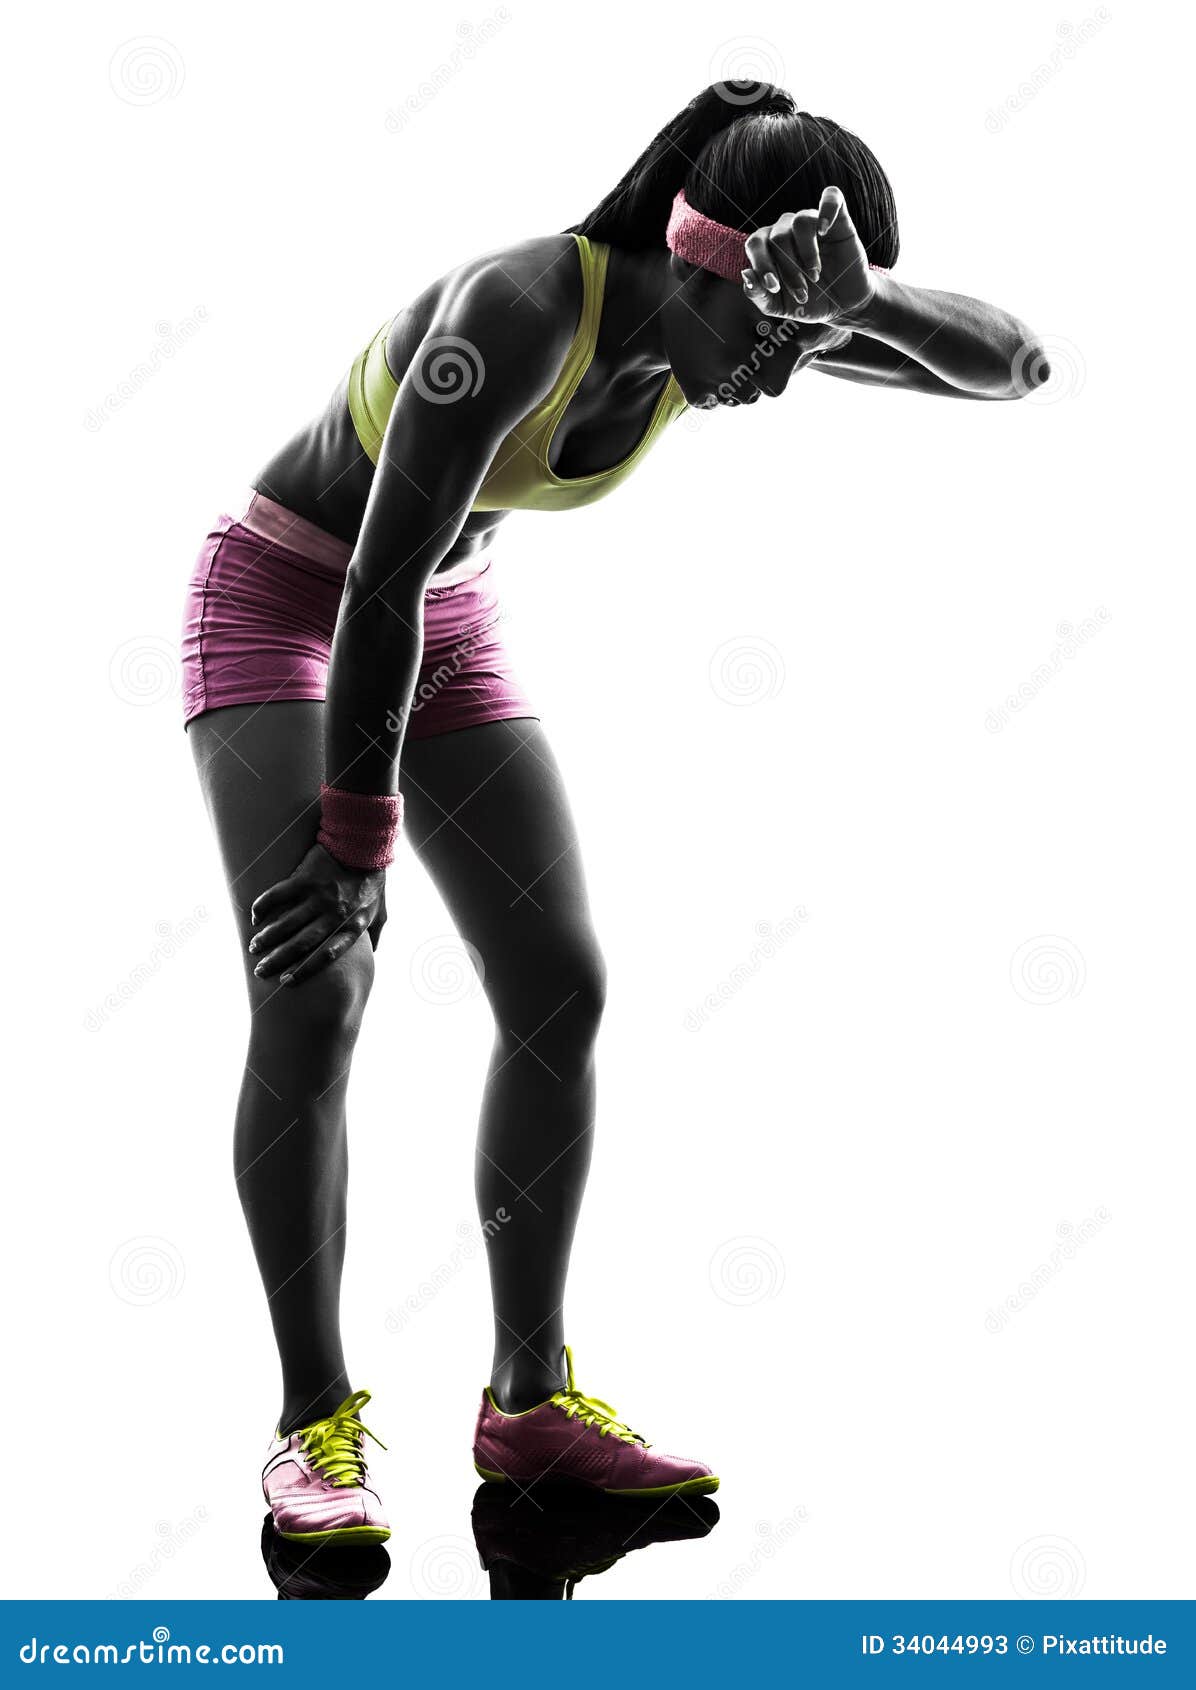 woman runner running tired breathless silhouette